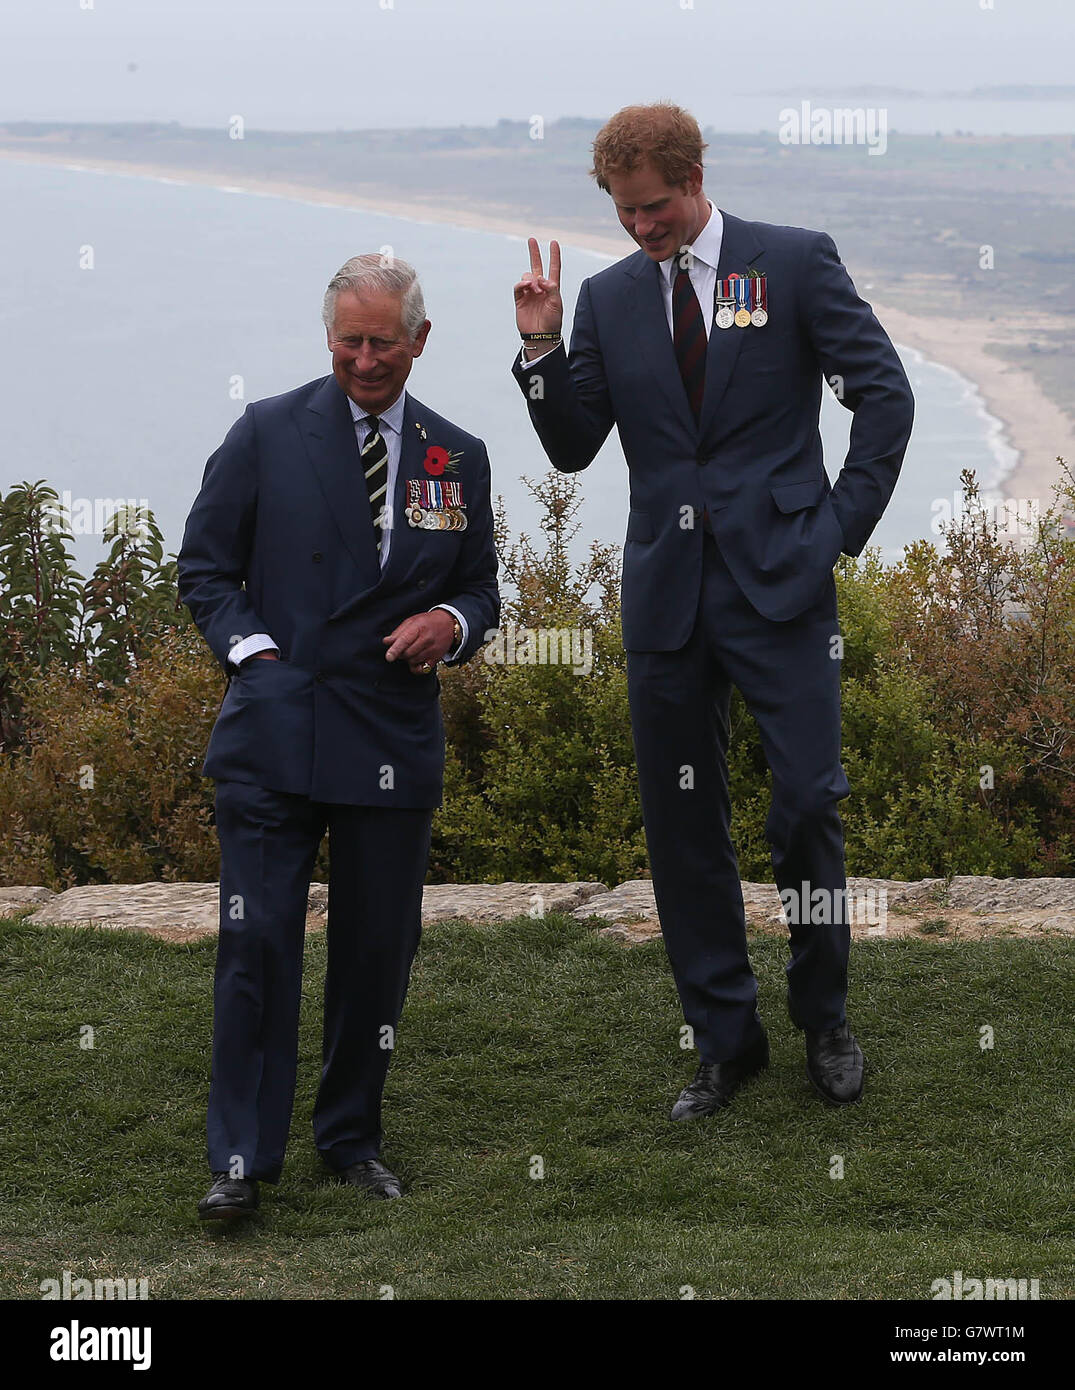 Le prince de Galles et le prince Harry visitent le Nek, une étroite crête du champ de bataille d'Anzac sur la péninsule de Gallipoli, dans le cadre des commémorations marquant le 100e anniversaire de la campagne condamnée de Gallipoli. Banque D'Images